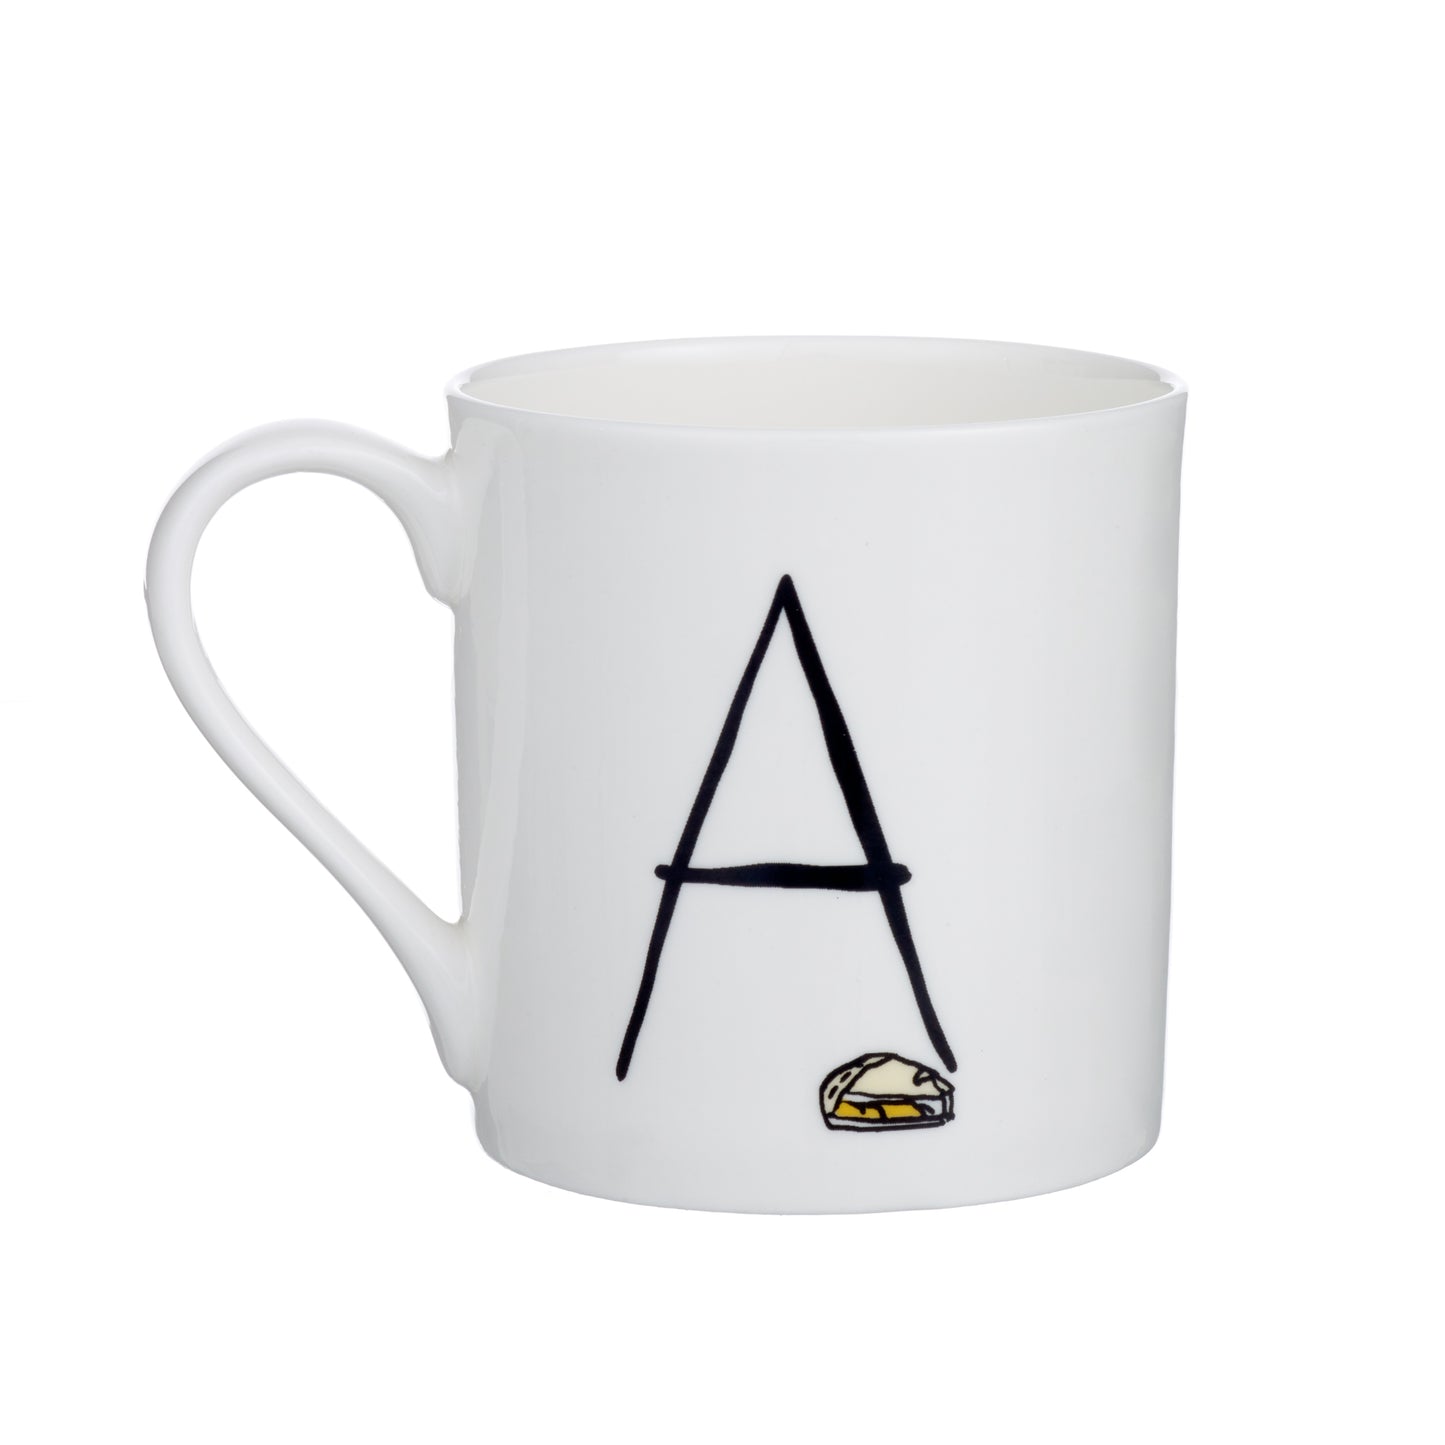 A - Alphabet of Snacking Animals Mug